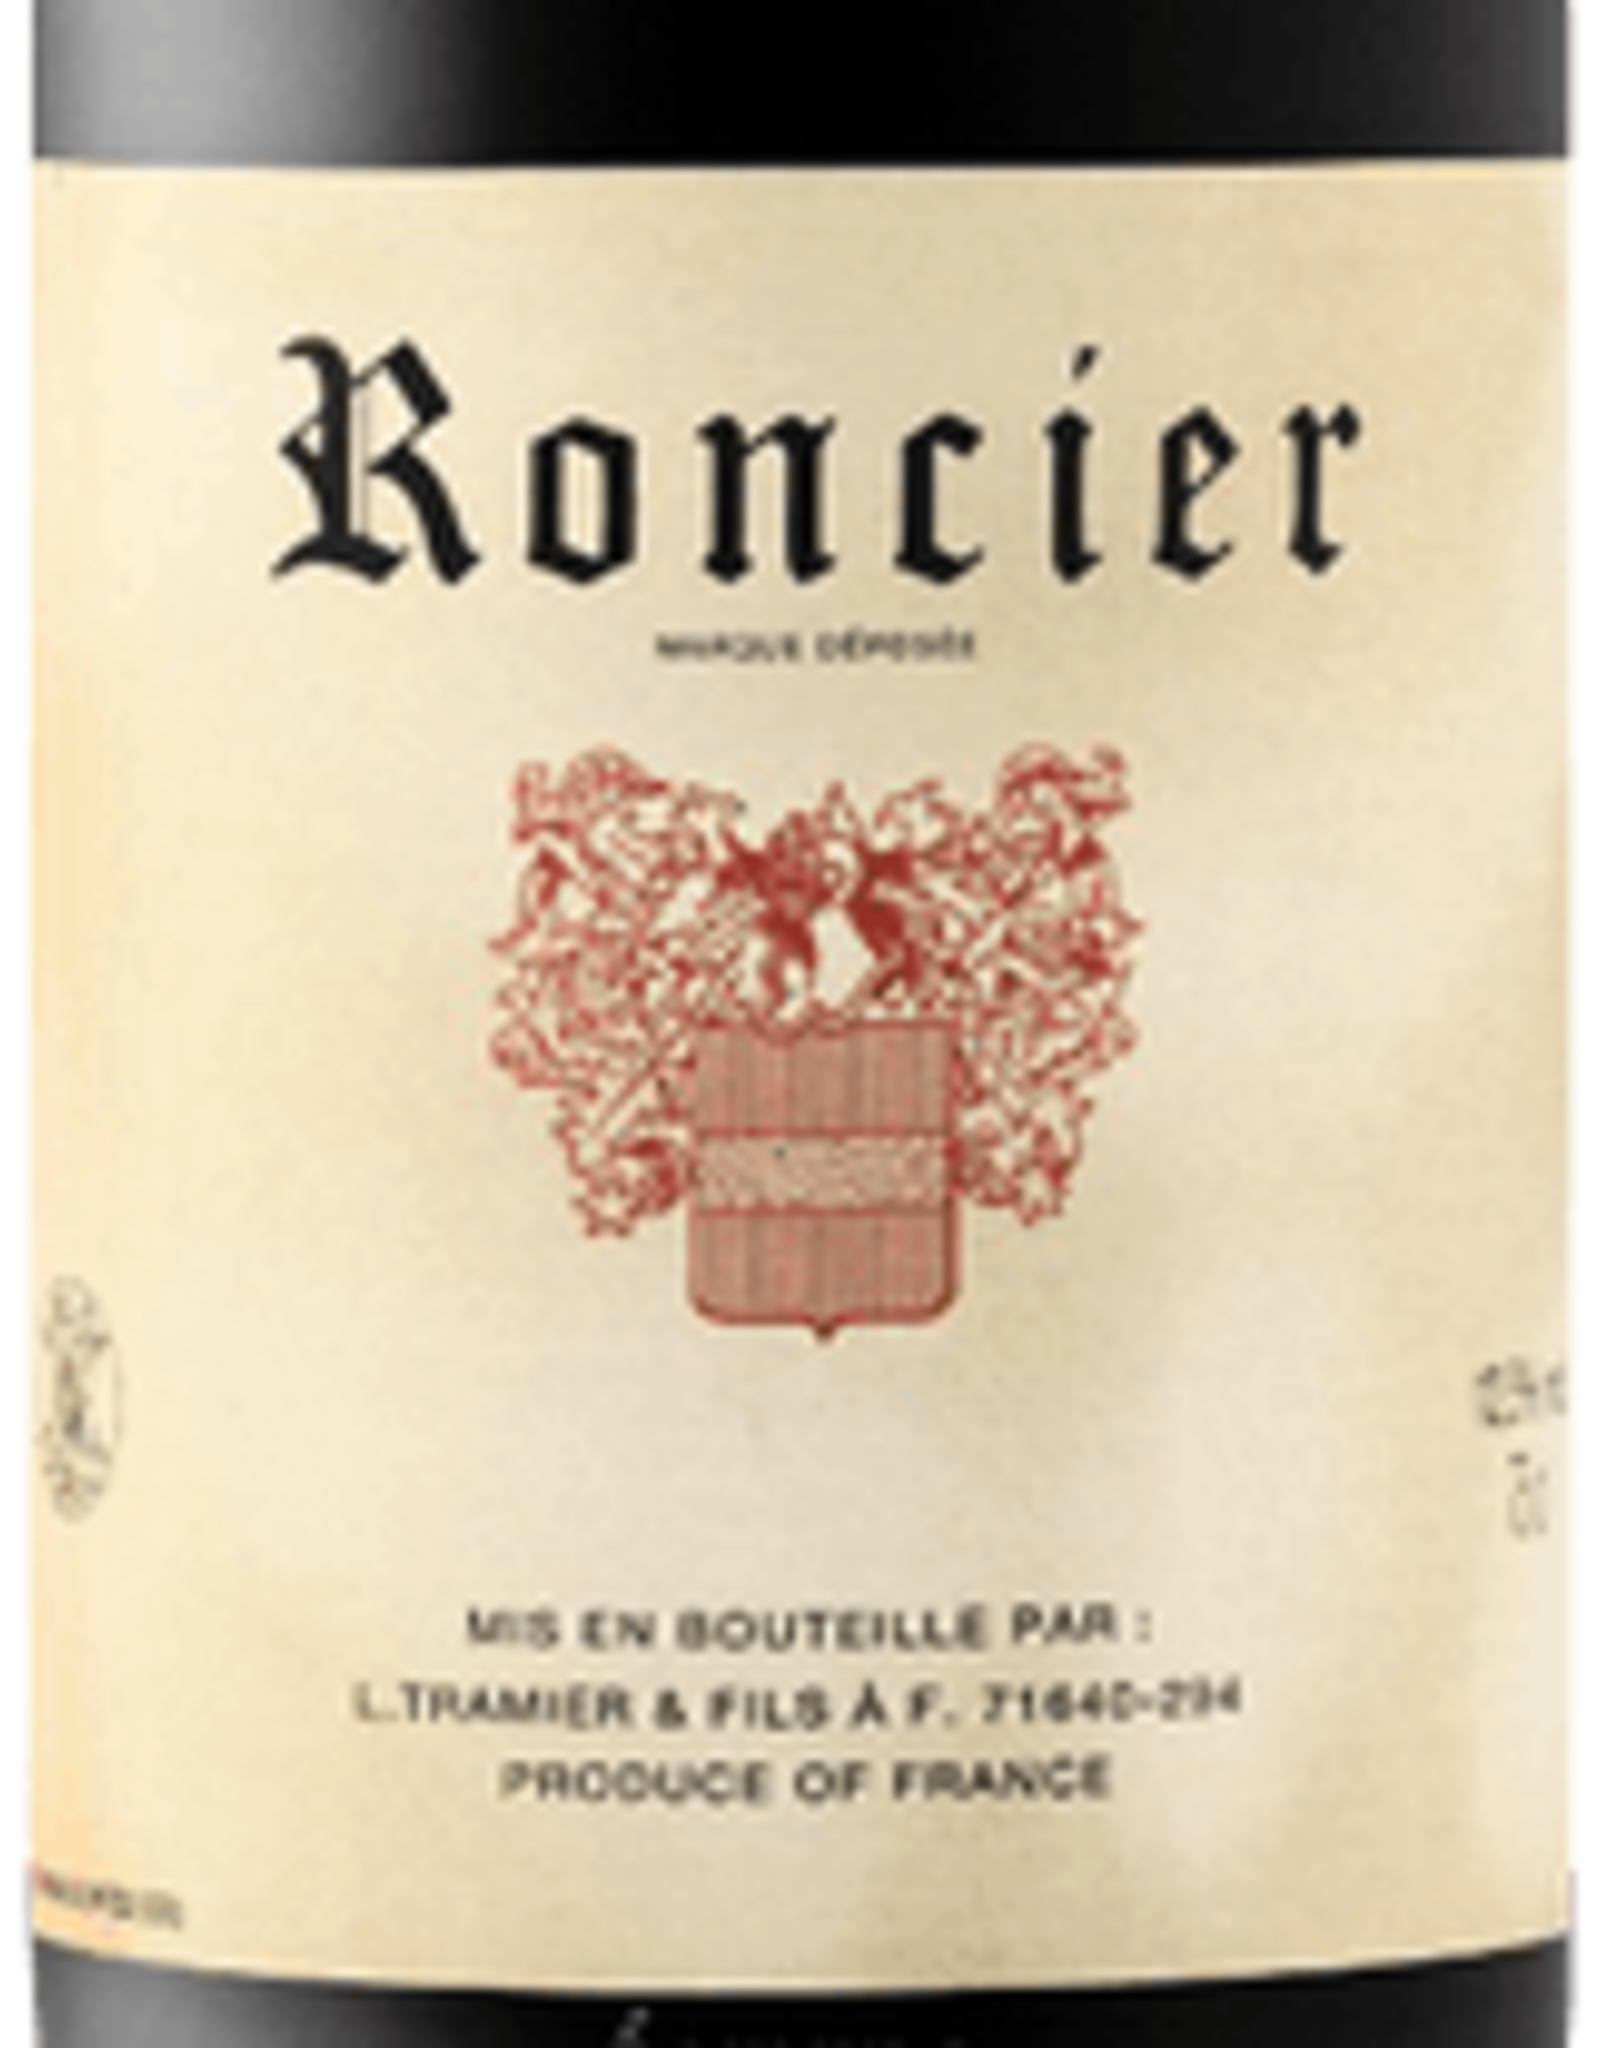 L. Tramier & Fils Roncier Pinot Noir